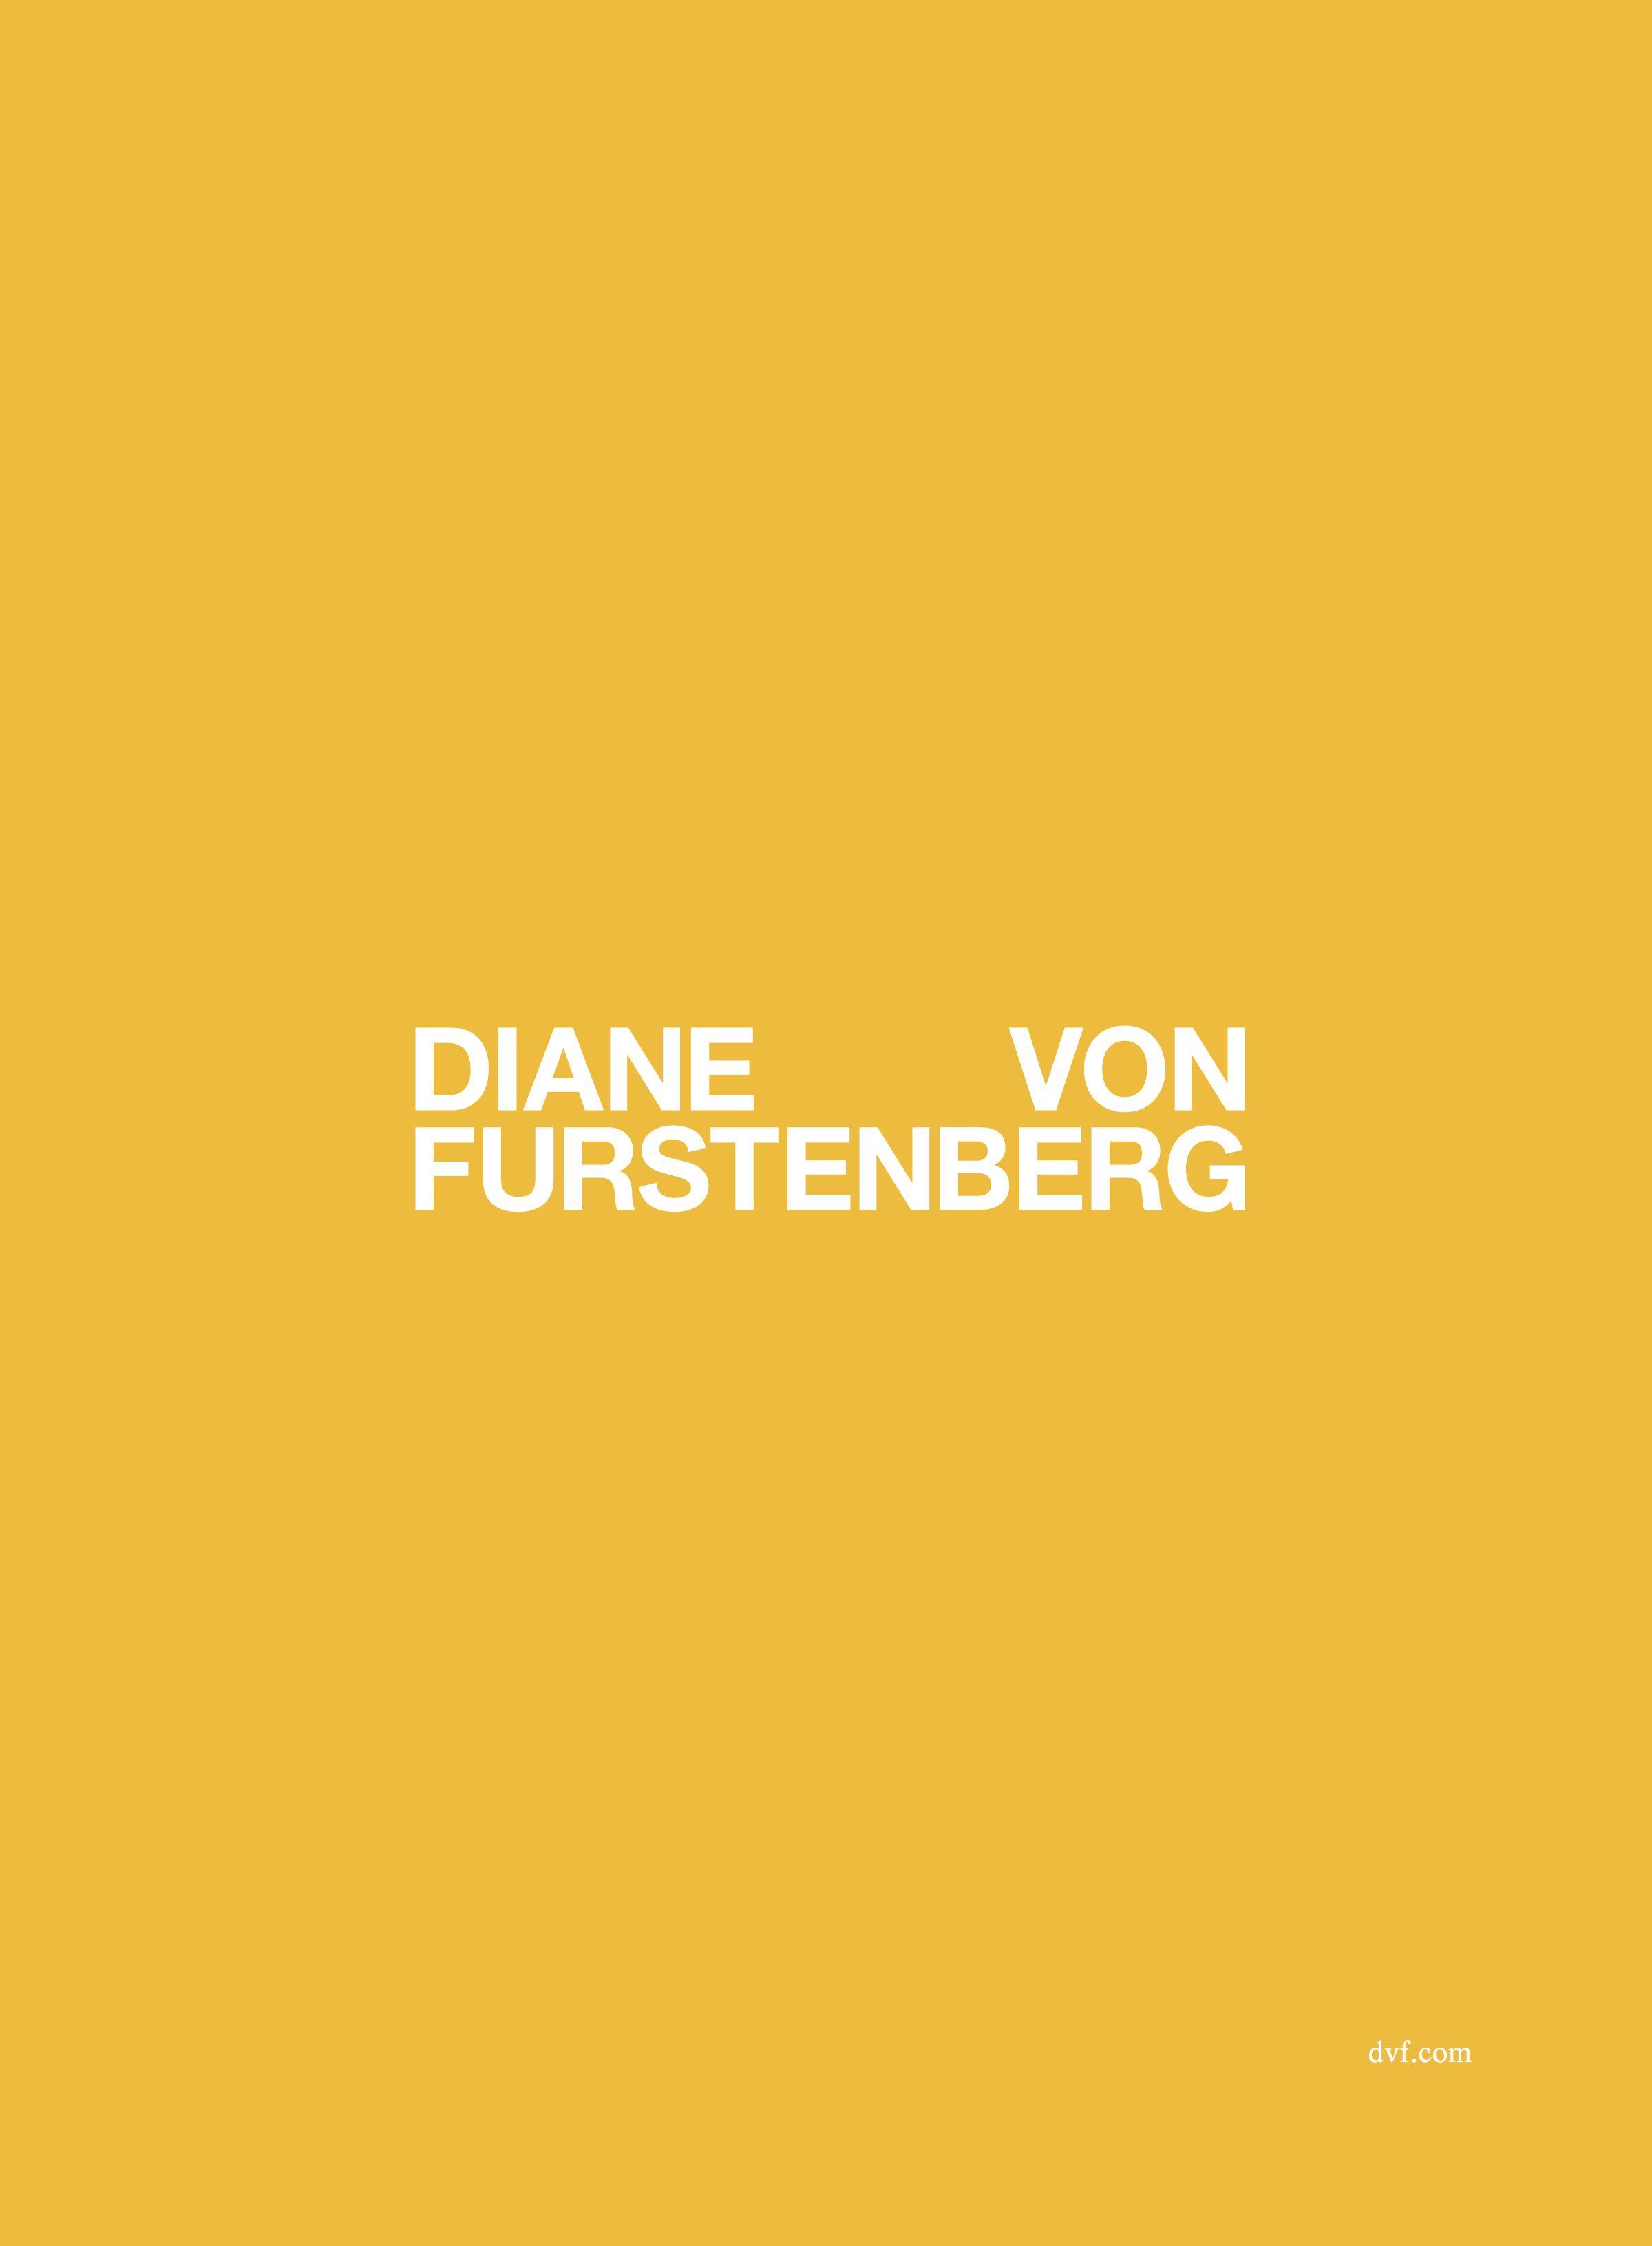 Diane Von Furstenberg Logo - DVF Re Brands Under Chief Creative Officer Jonathan Saunders